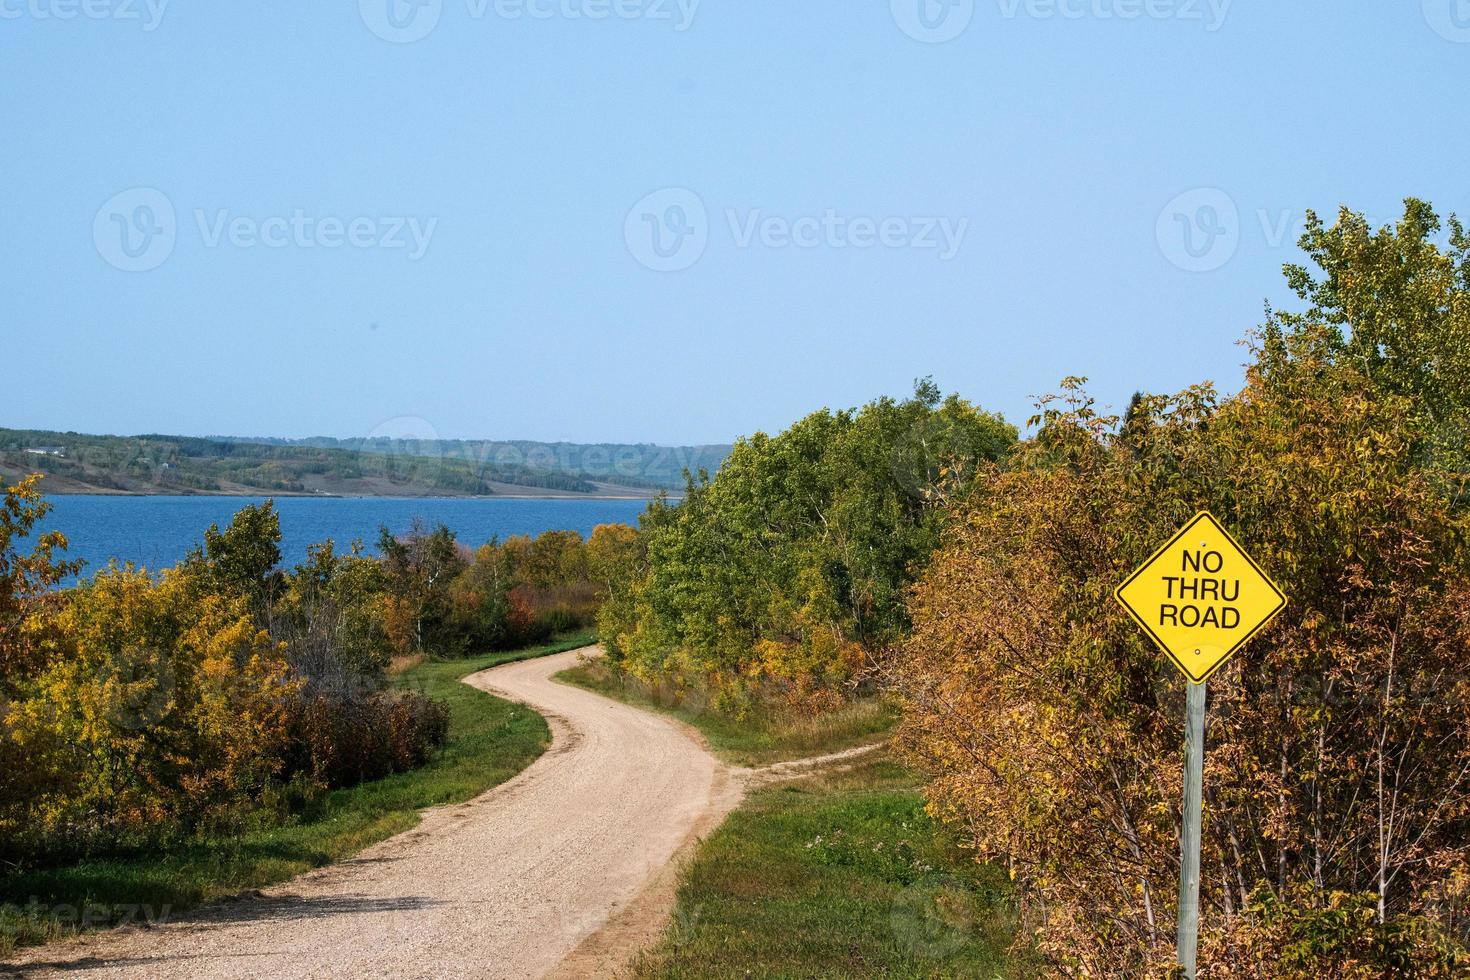 camino rural en las praderas canadienses en otoño. foto